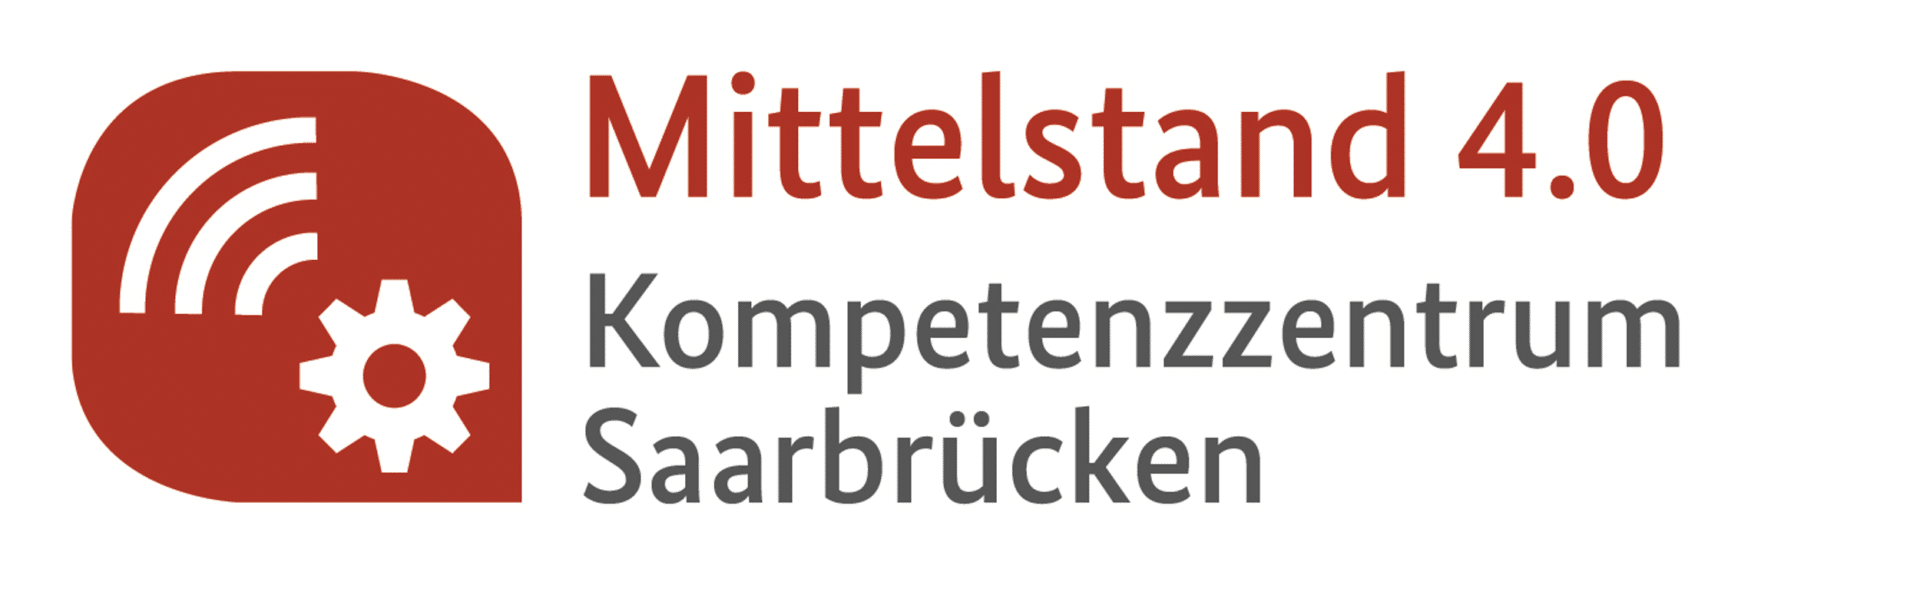 Mittelstand 4.0 Kompetenzzentrum Saarbrücken